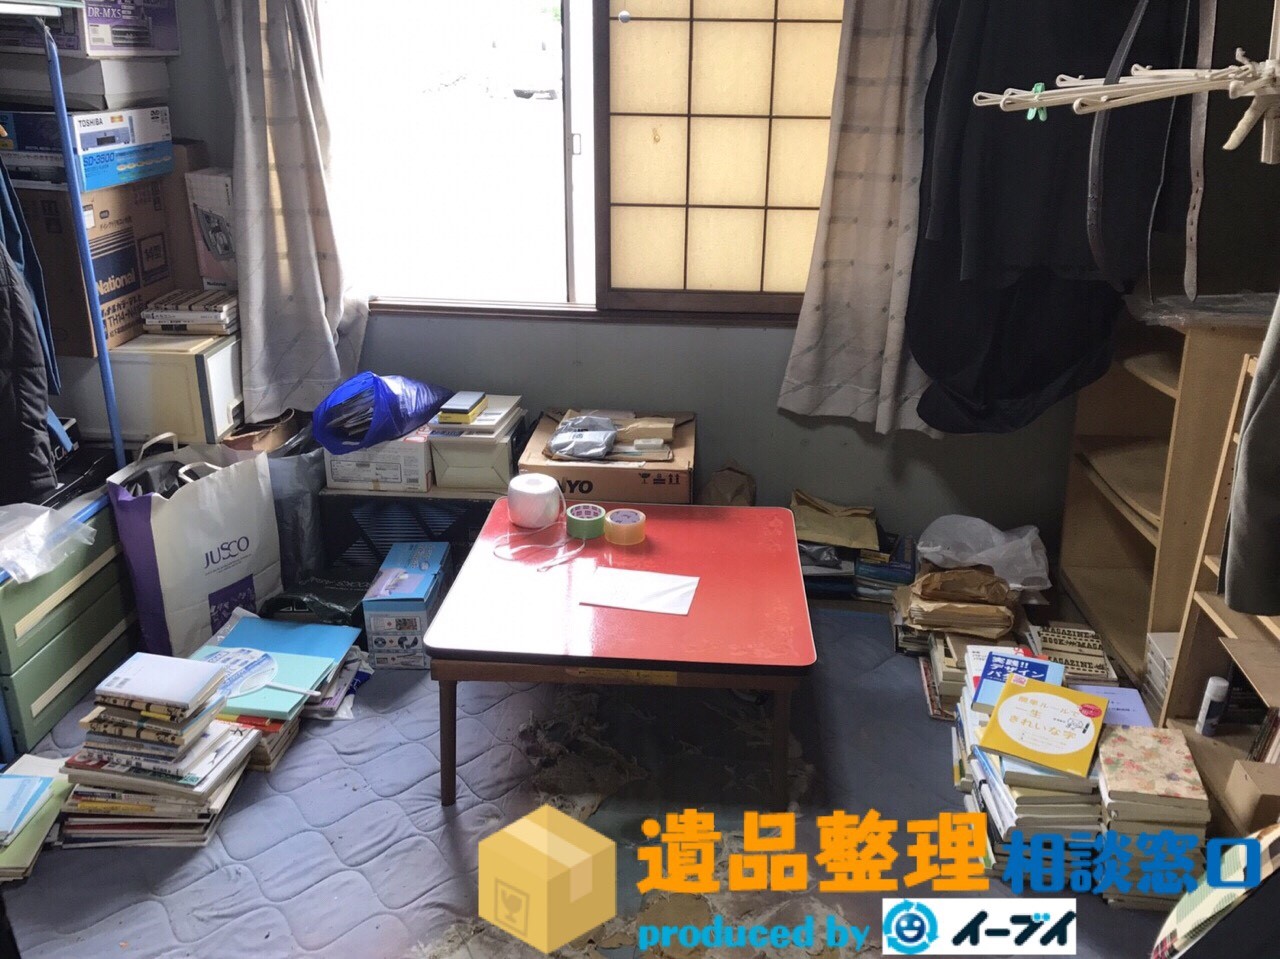 兵庫県川西市で遺品整理に伴う家具処分や生活用品の片付けをしました。のアイキャッチ